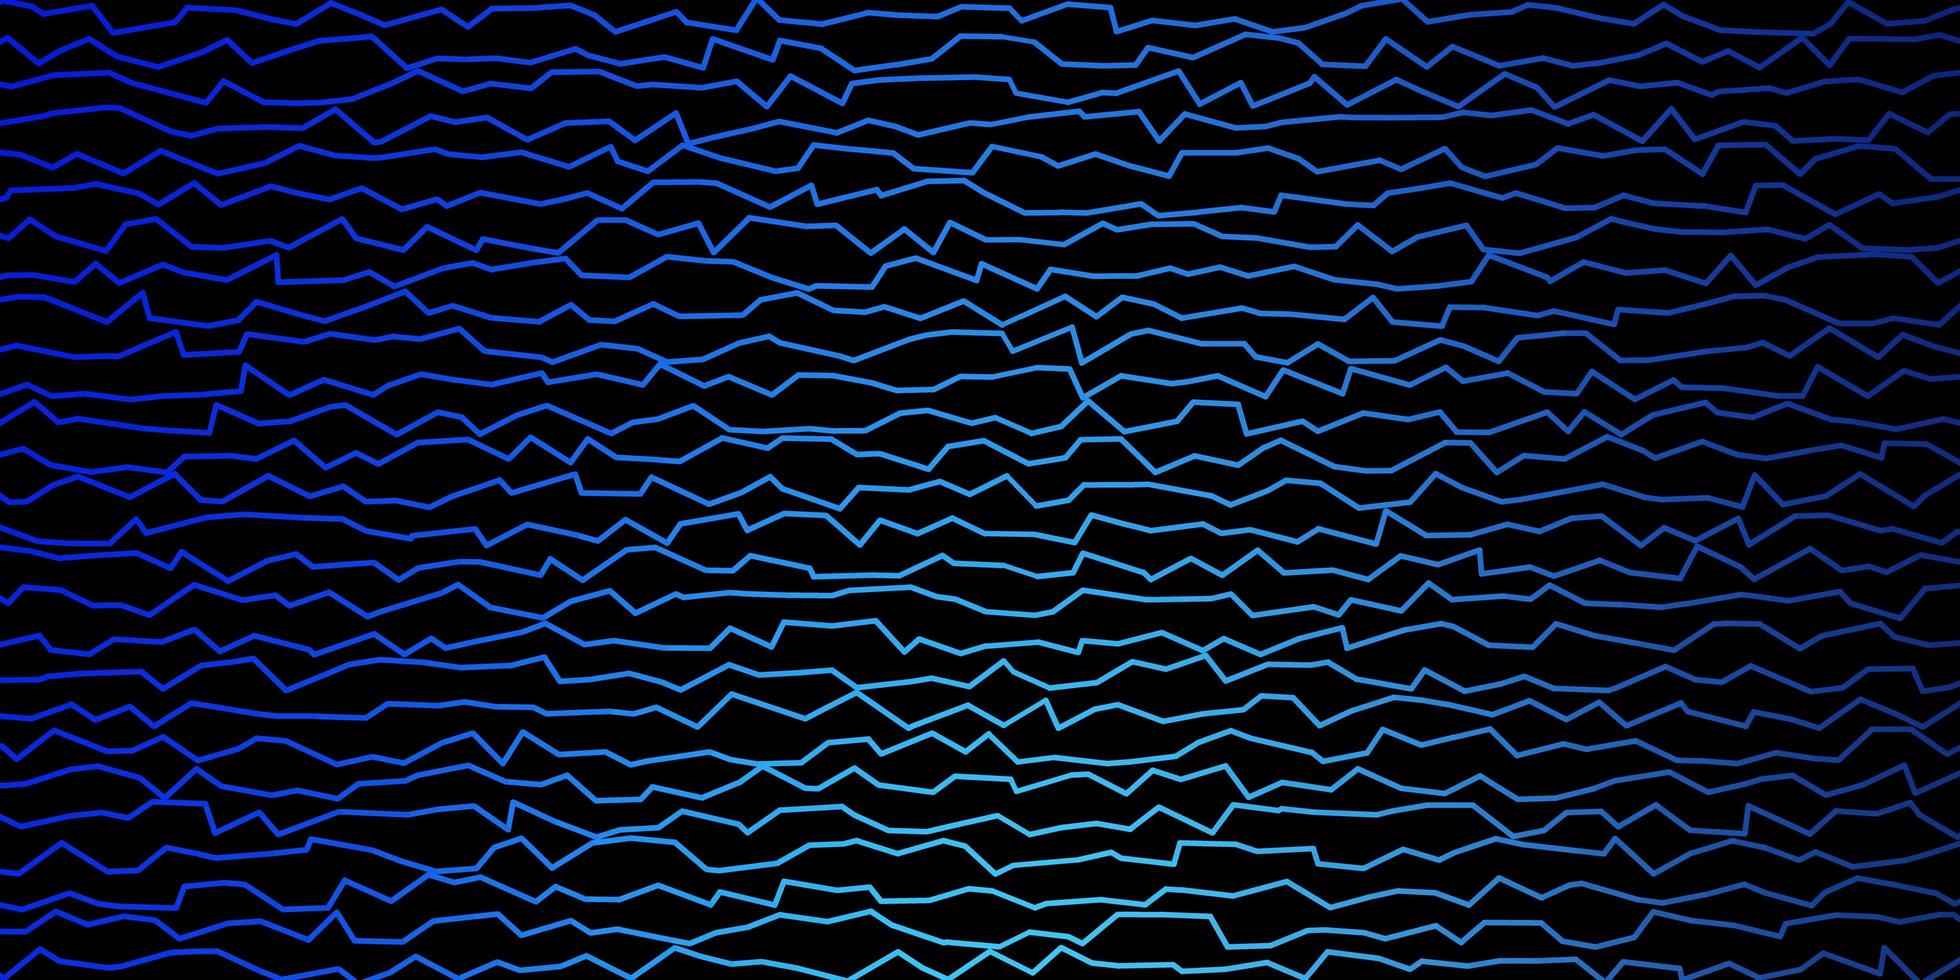 modelo de vetor azul escuro com linhas irônicas.